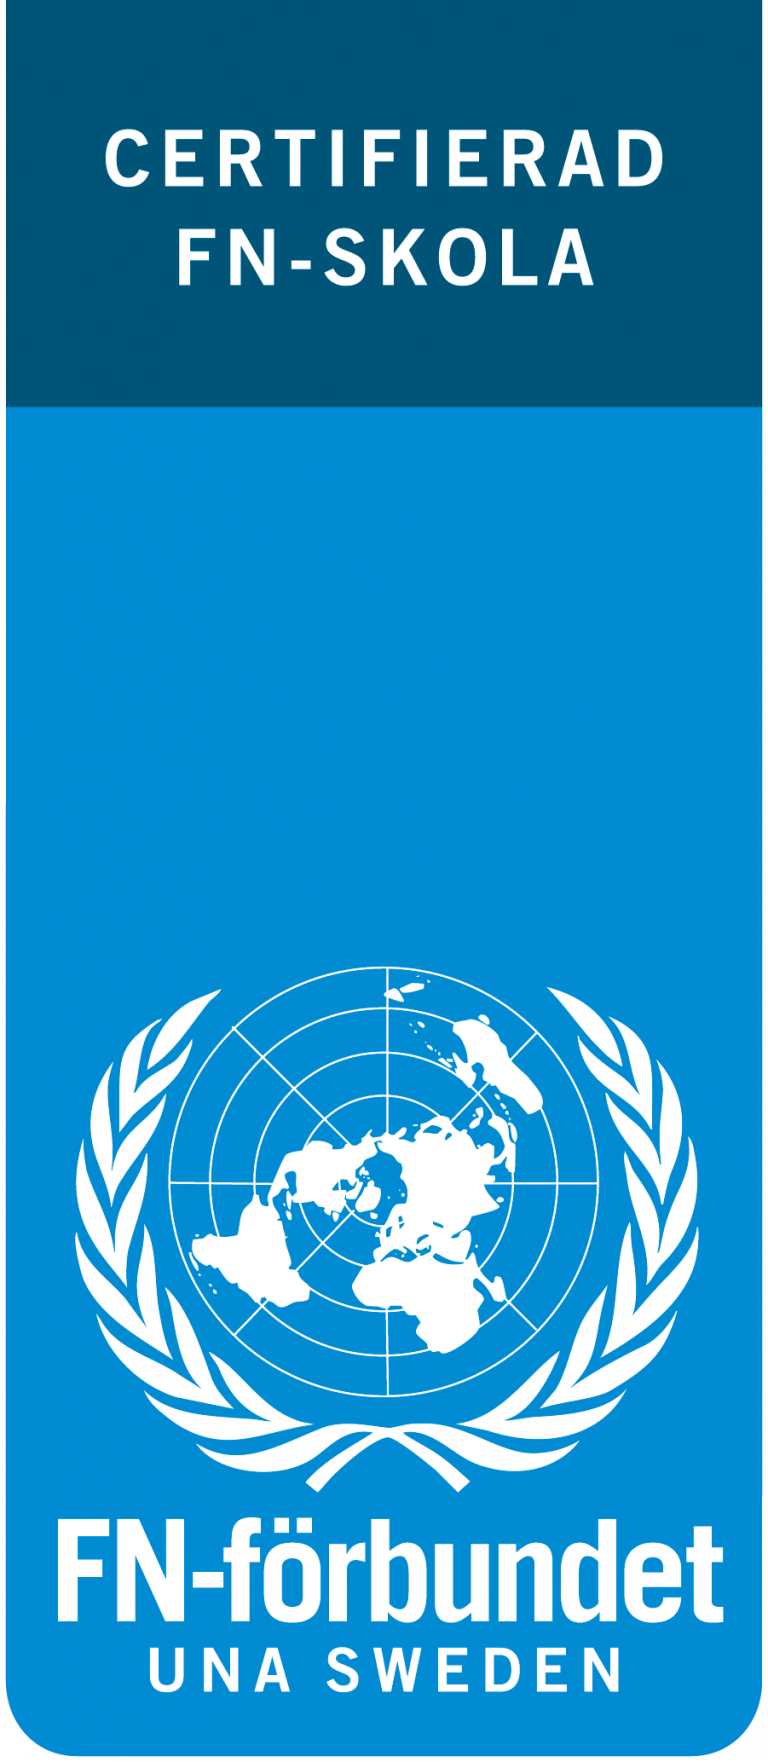 Logotyp för FN-förbundet. I logotypen står texten Certificerad FN-skola. 